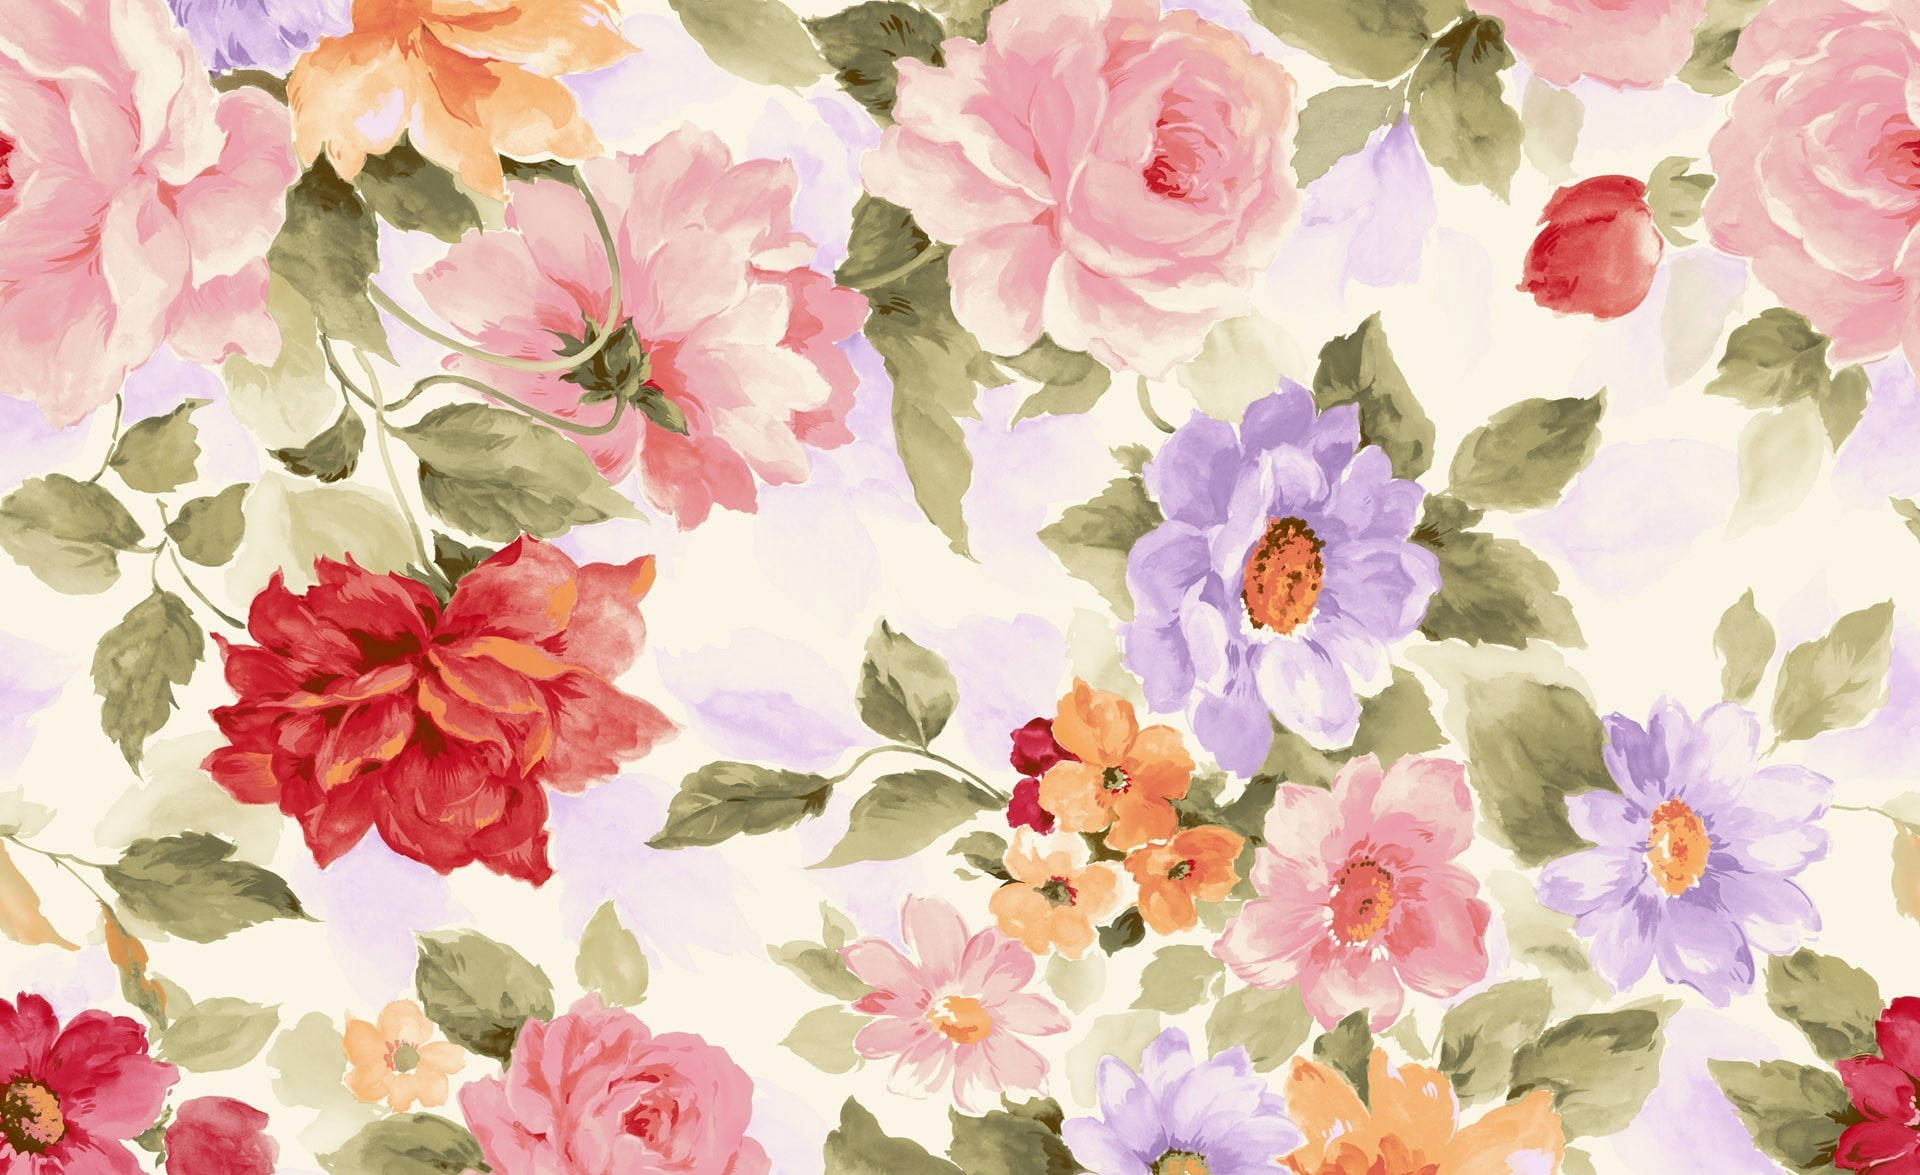 Vibrant Traditional Flower Painting for Desktop Wallpaper